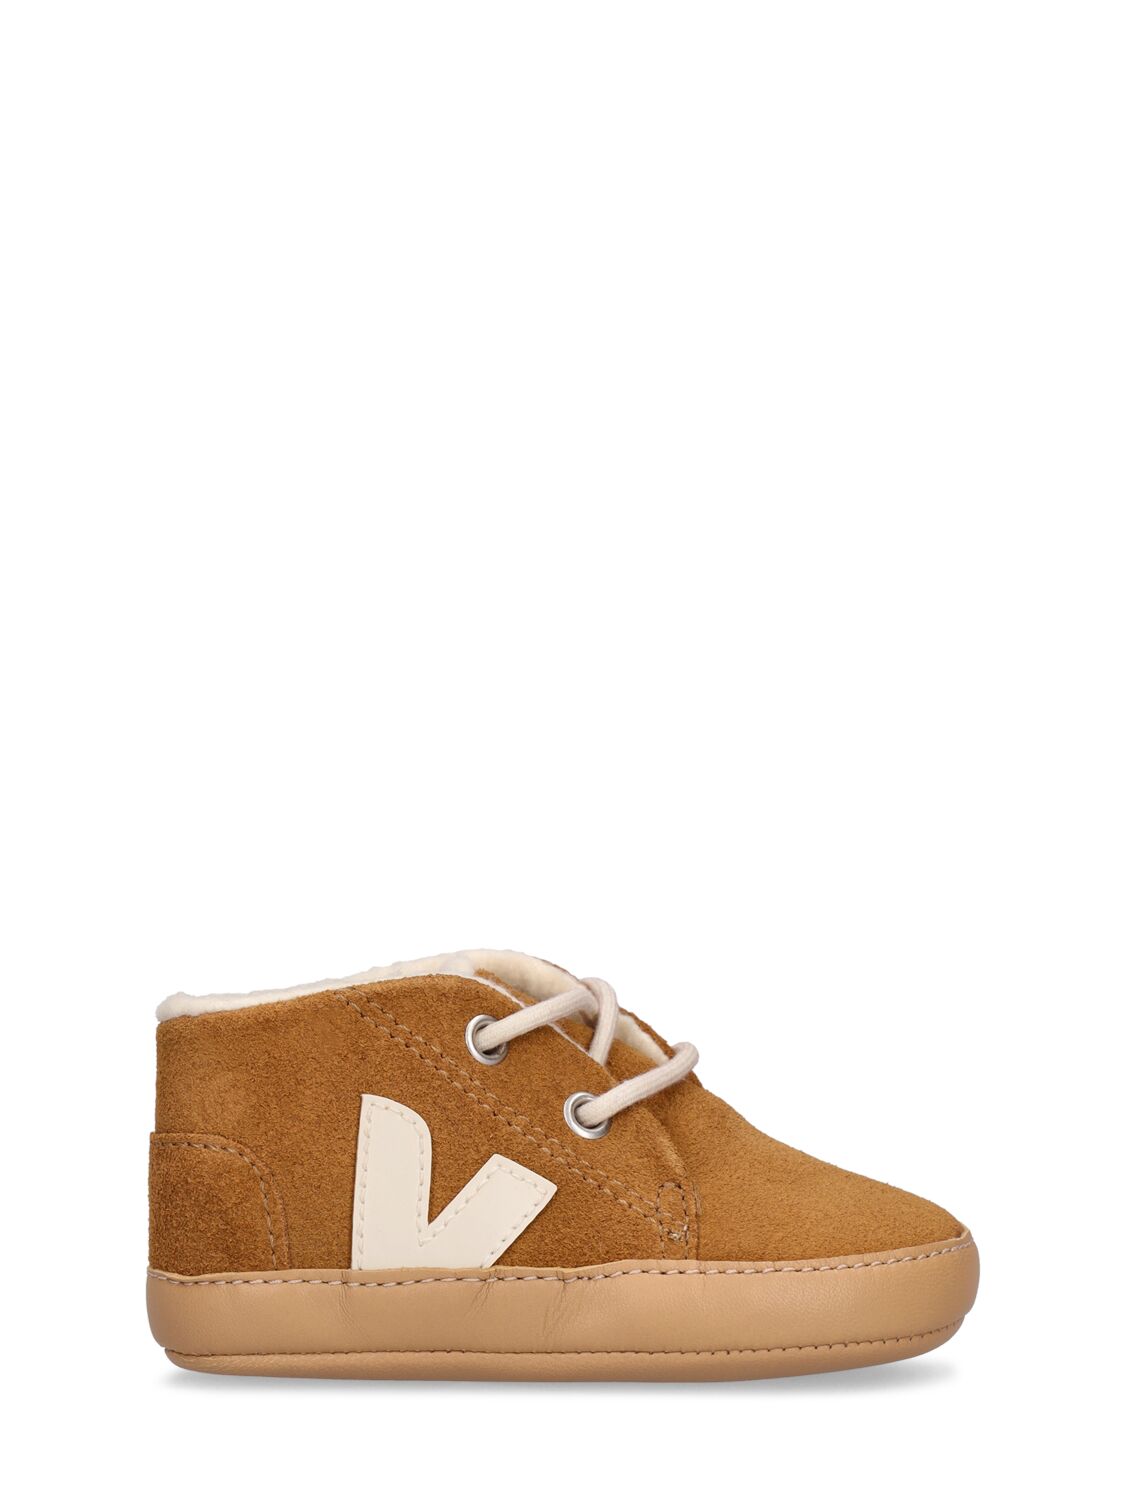 Veja Kids' Pre-walker Shoes In Brown